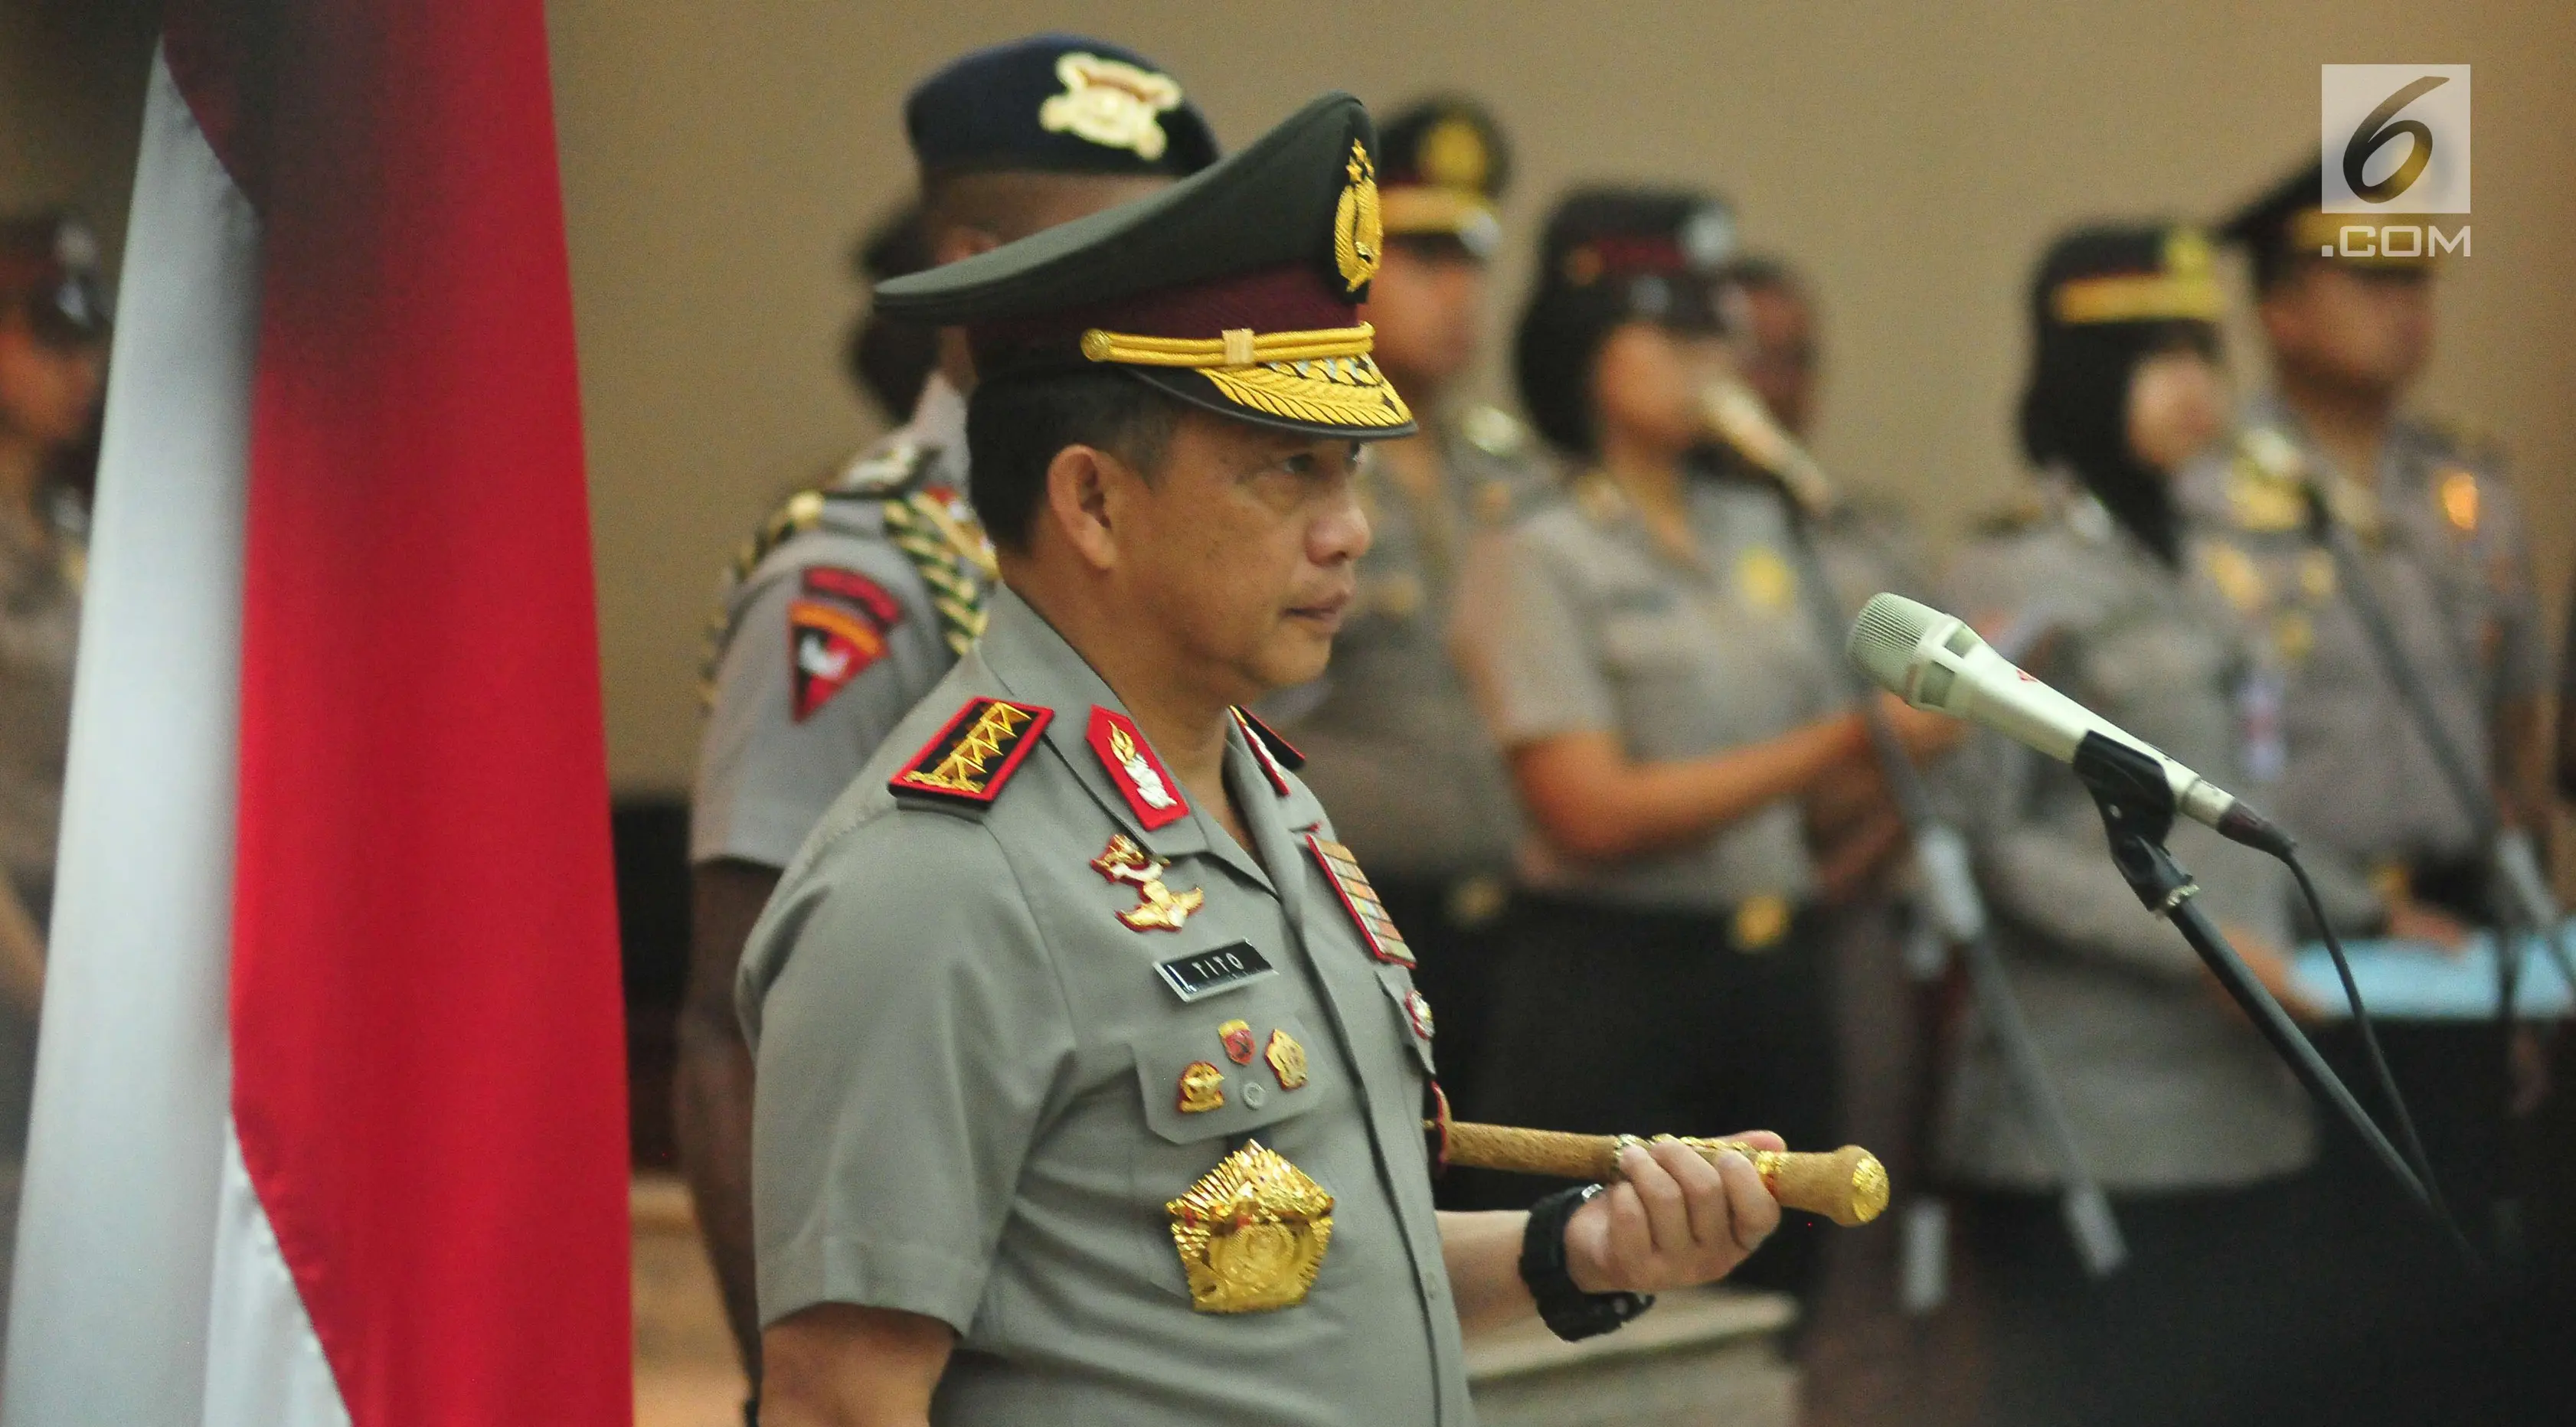 Kapolri Jenderal Tito Karnavian memimpin upacara serah terima Jabatan lima kapolda di Gedung Rupatama Mabes Polri, Jakarta, Selasa (5/9). Selain lima Kapolda, Tito juga menaikkan pangkat 11 orang pejabat tinggi Polri lainnya. (Liputan6.com/Helmi Afandi)